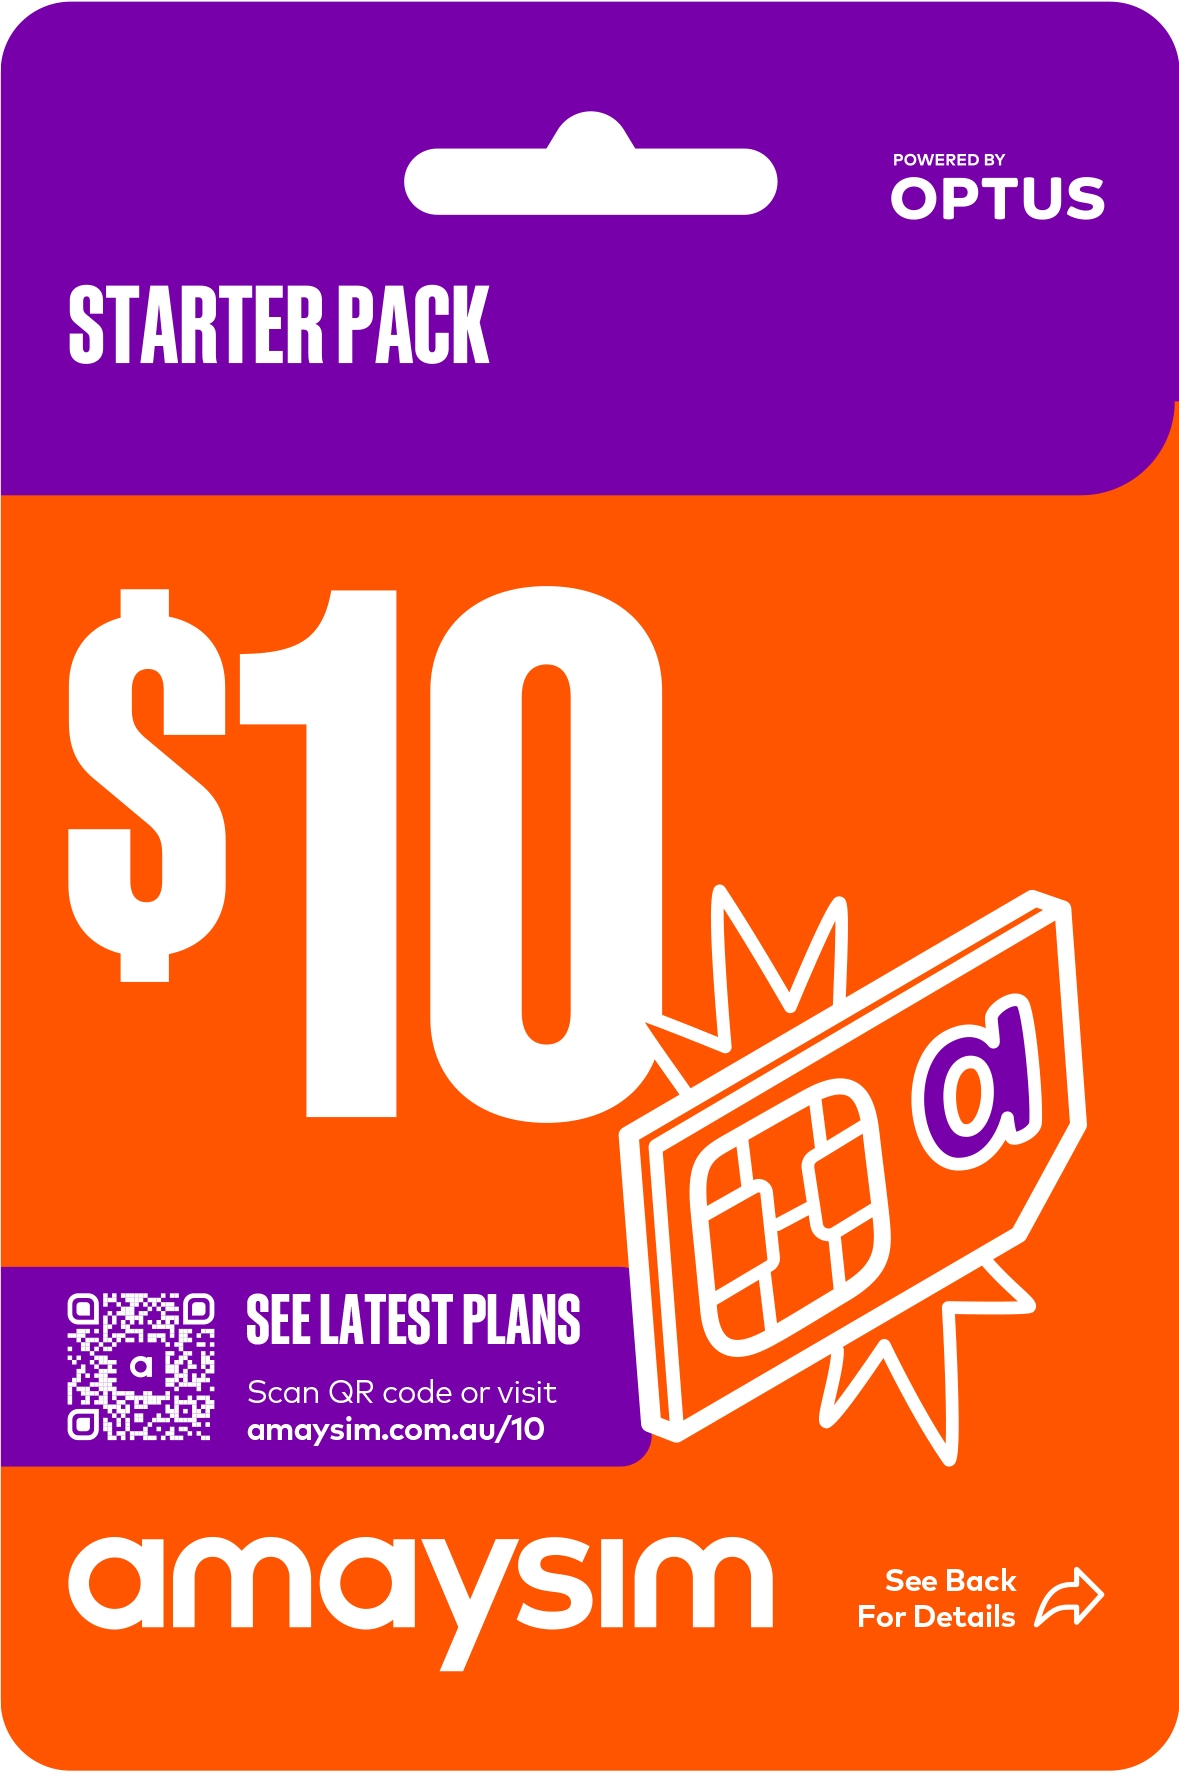 $200 starter pack